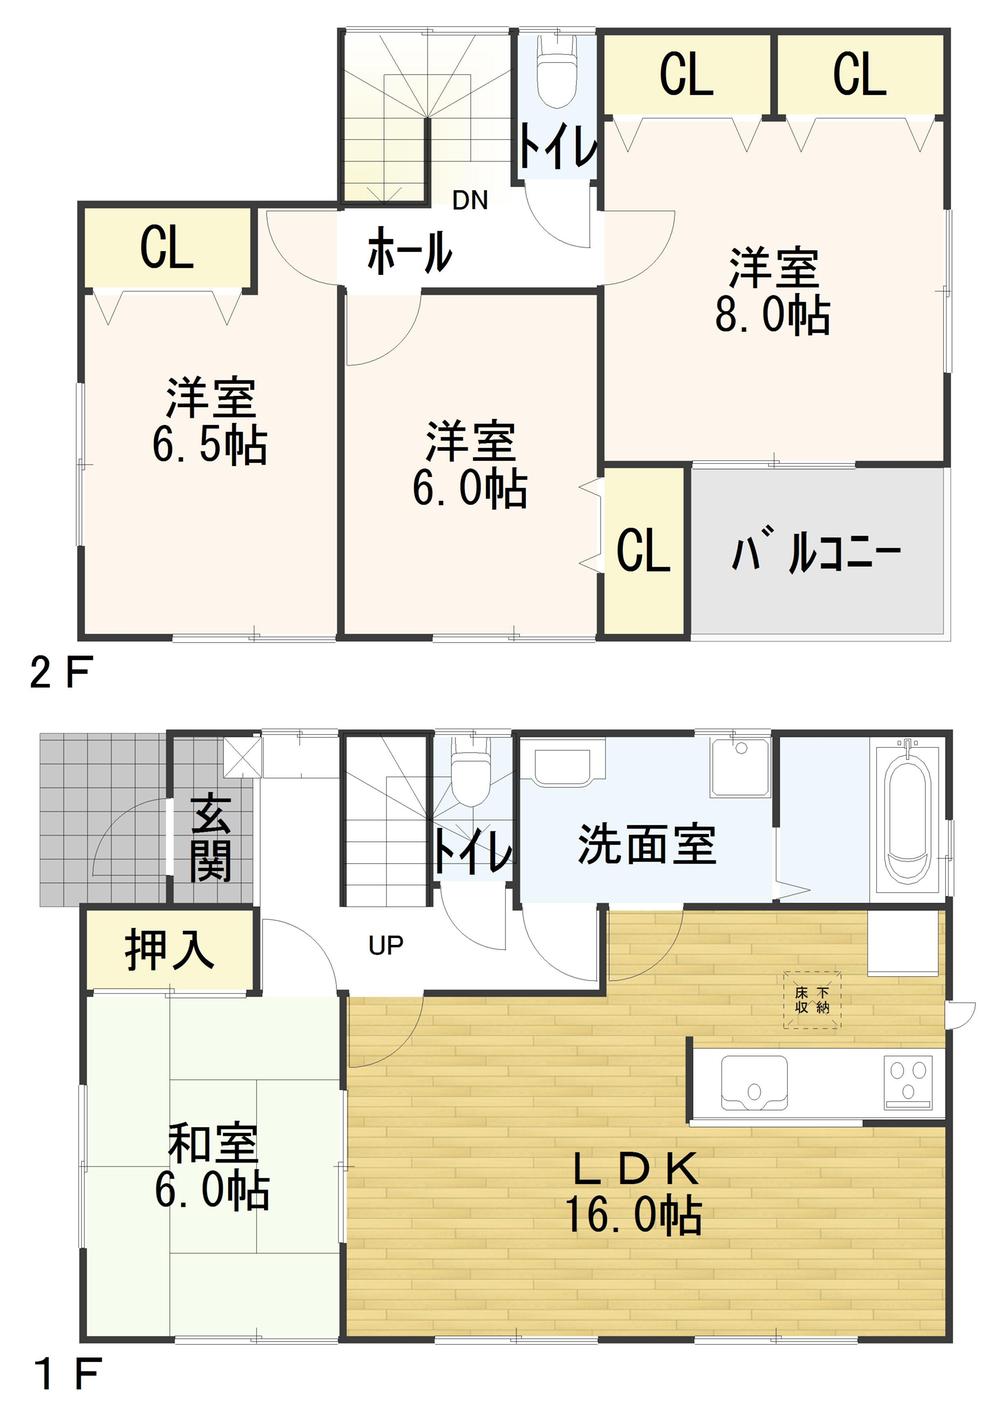 Floor plan. 17.3 million yen, 4LDK, Land area 160.3 sq m , Building area 104.34 sq m